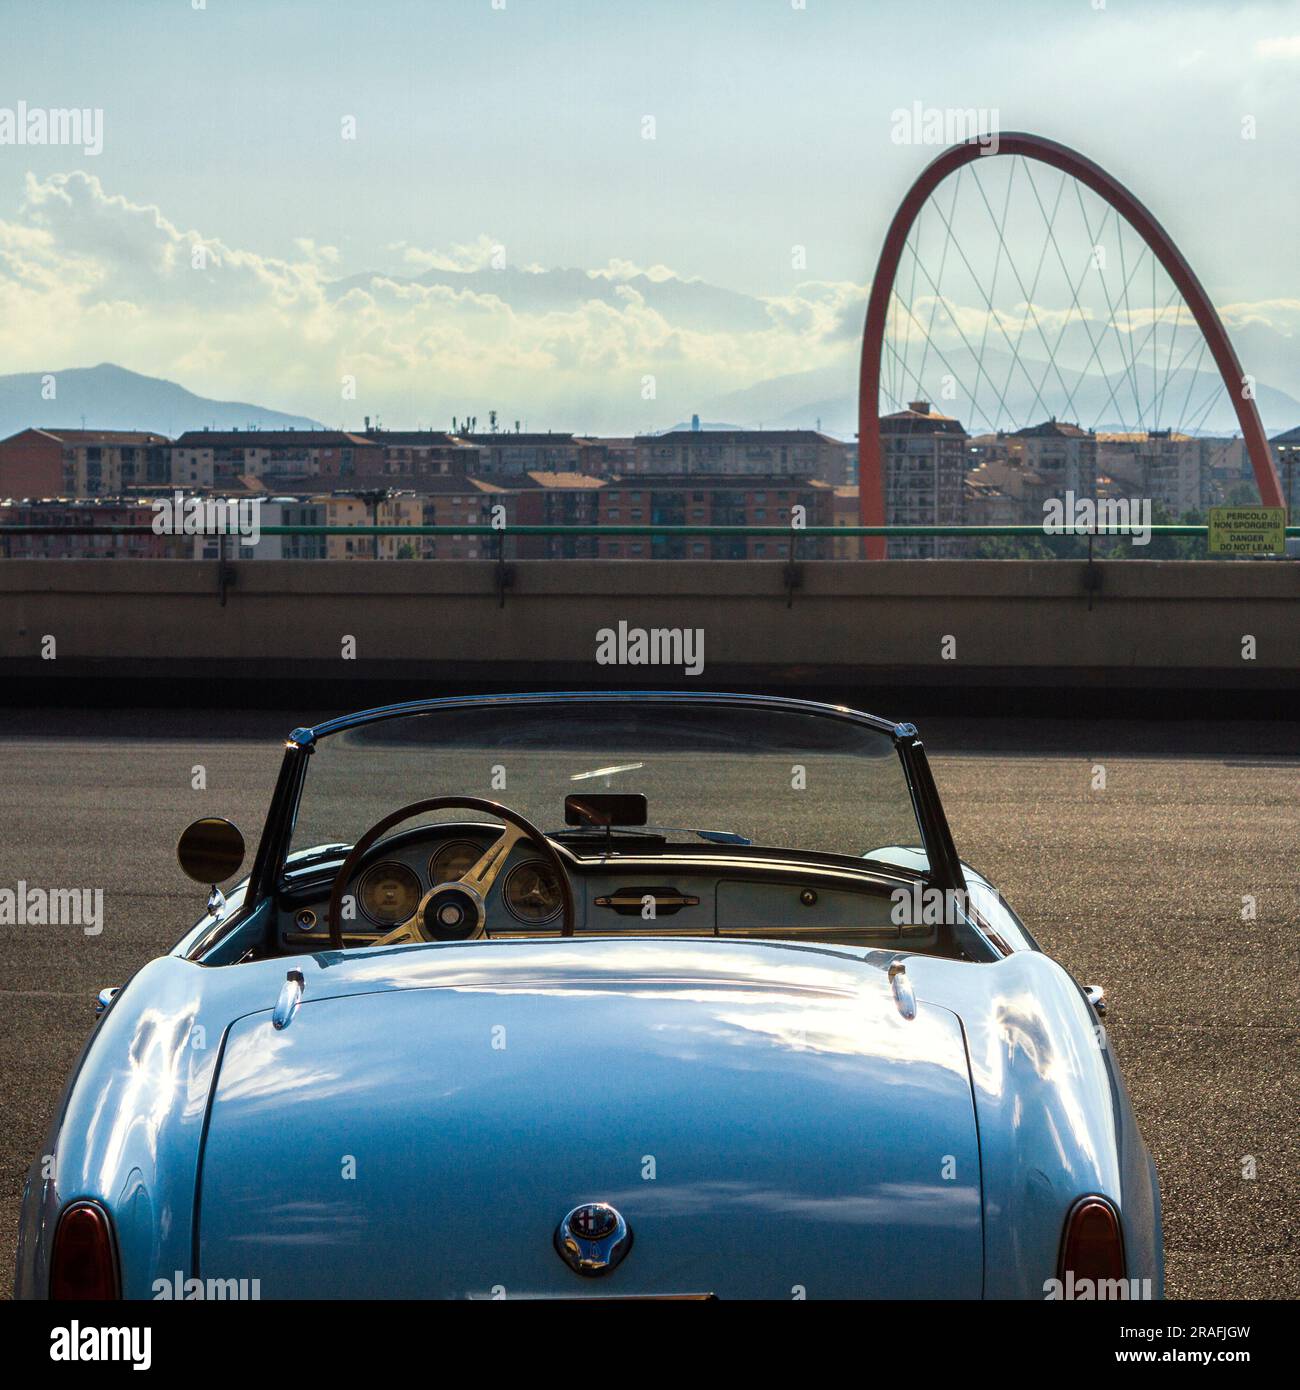 Vue arrière de l'Alfa Romeo Giulietta Spider sur la piste d'essai Lingotto sur le toit Banque D'Images